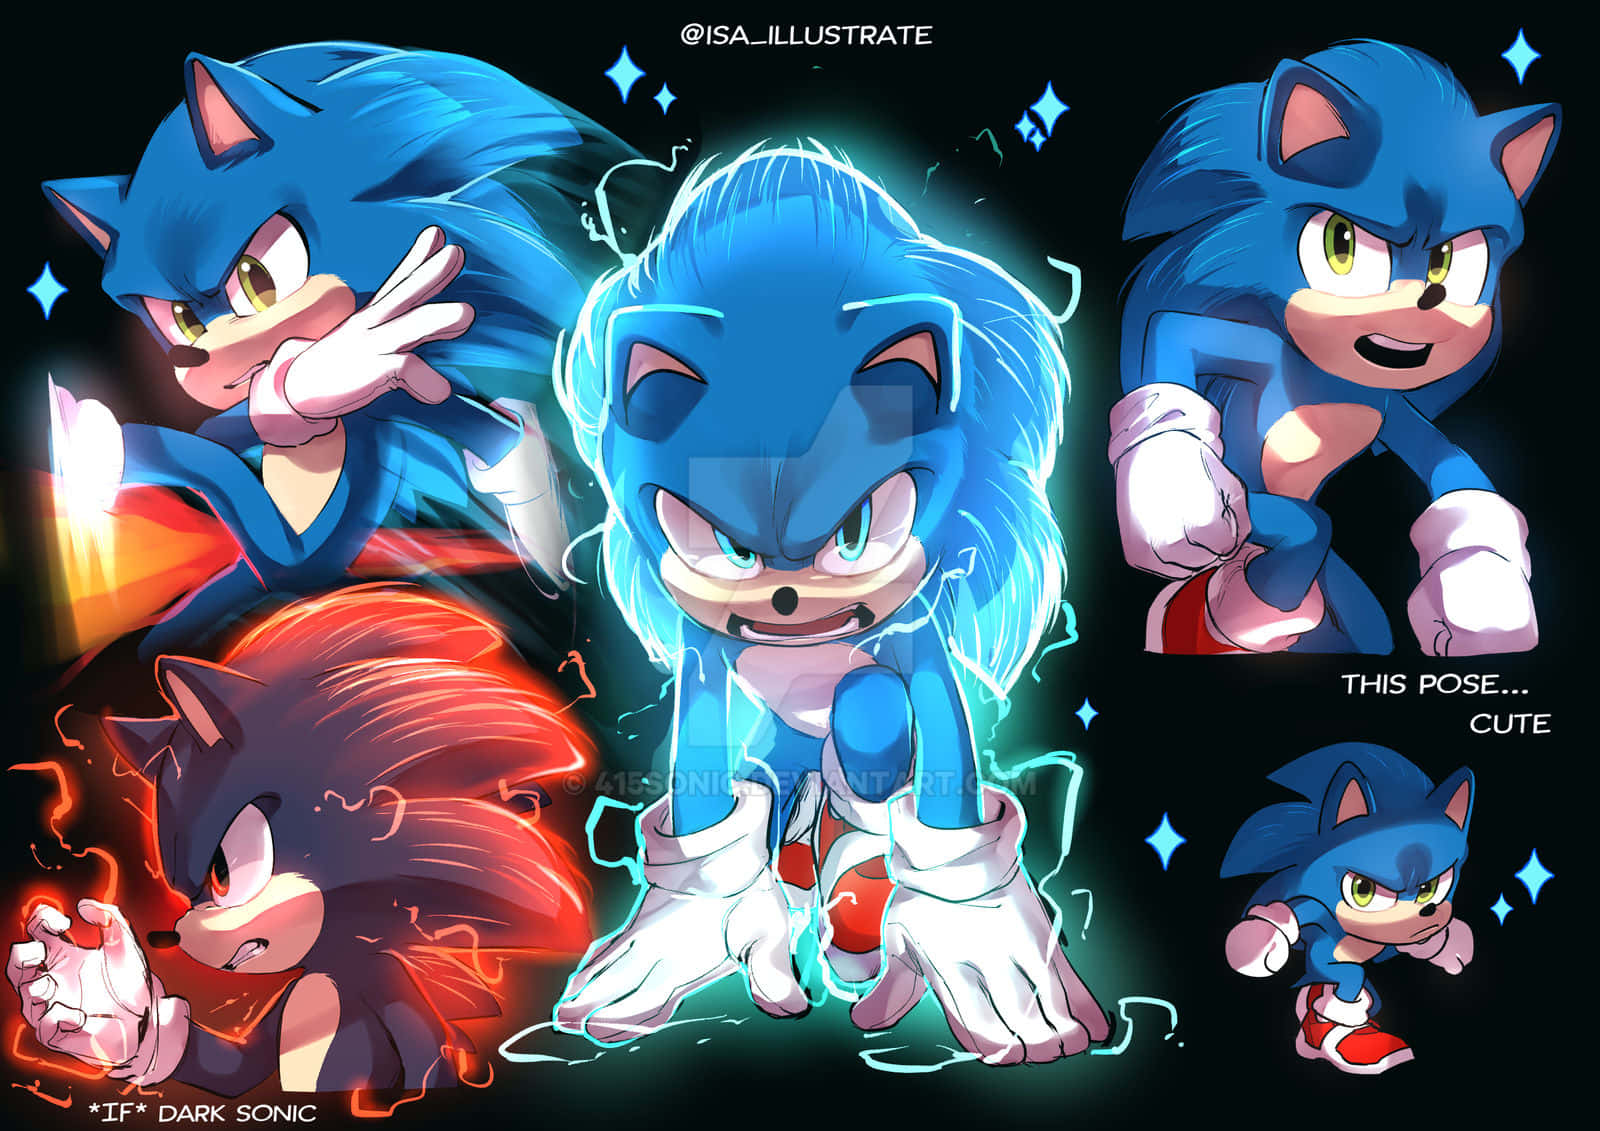 Vorwärtsrasen Mit Sonic!